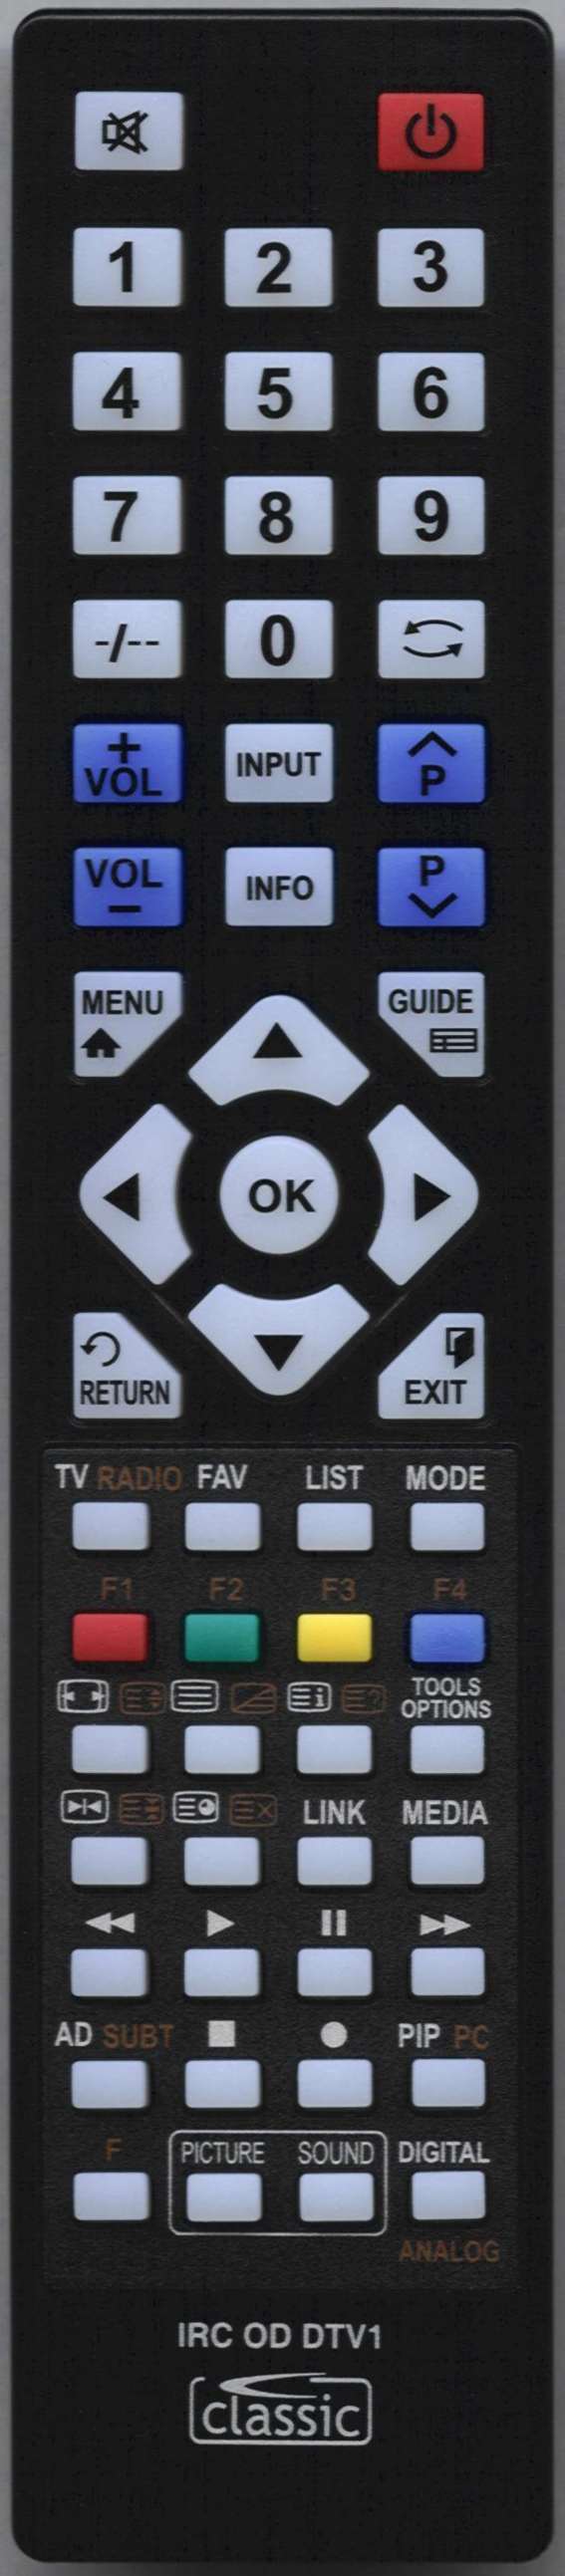 SEG CT 1402A Remote Control